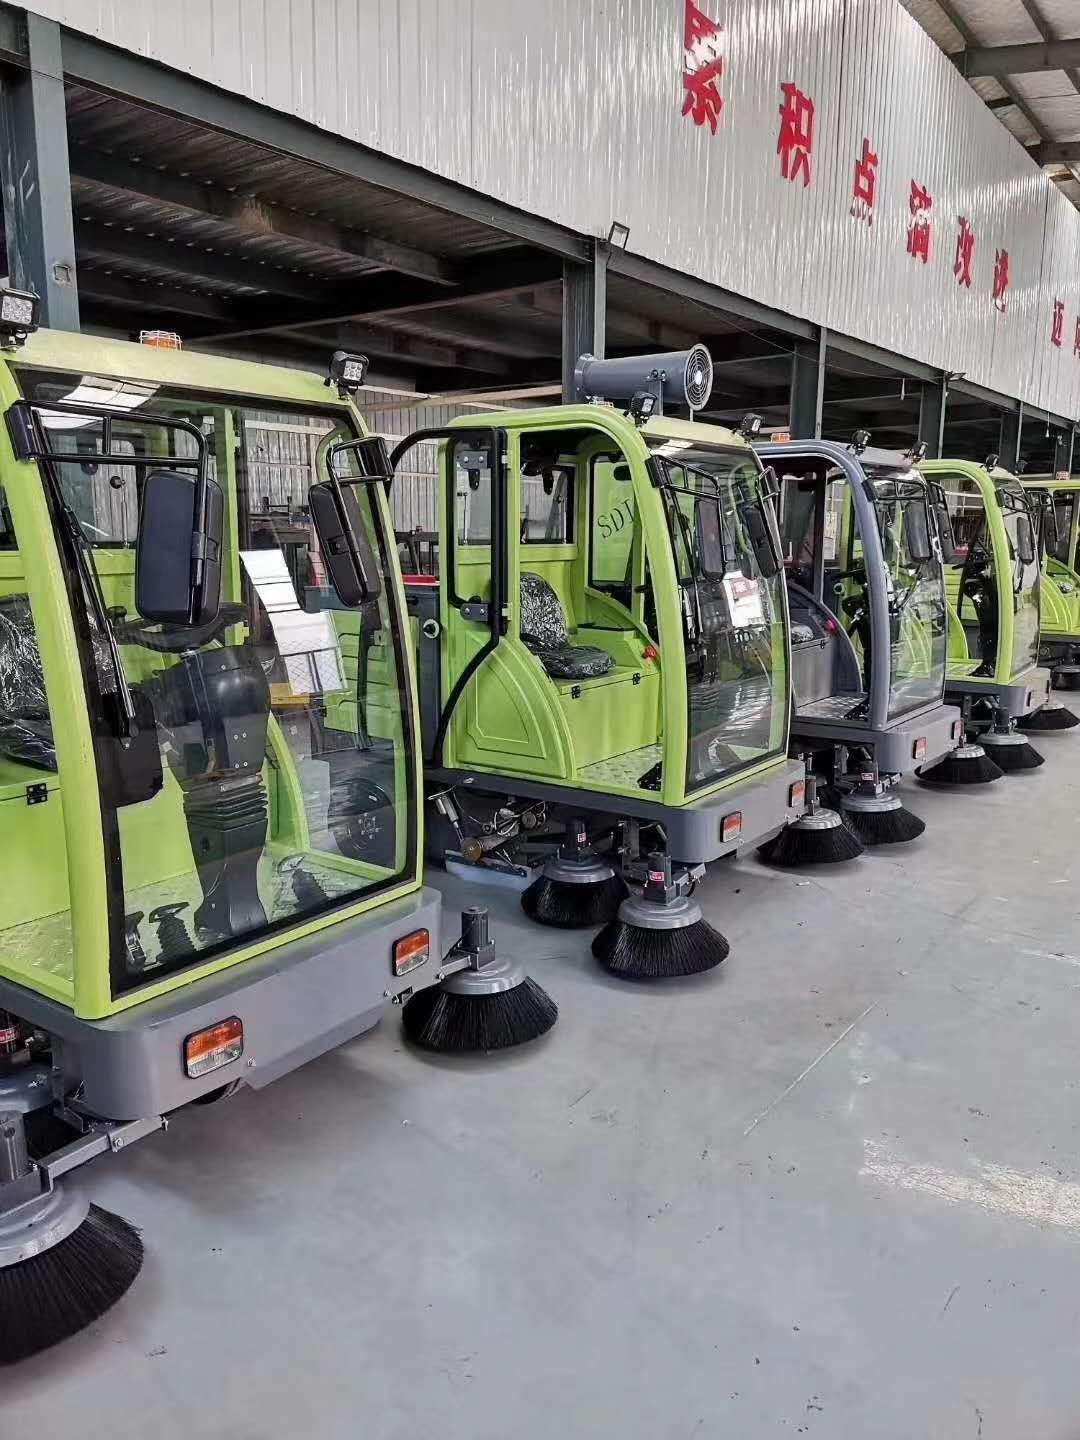 山东省滨州市滨城区环卫车扫地车生产厂家新款2000型号